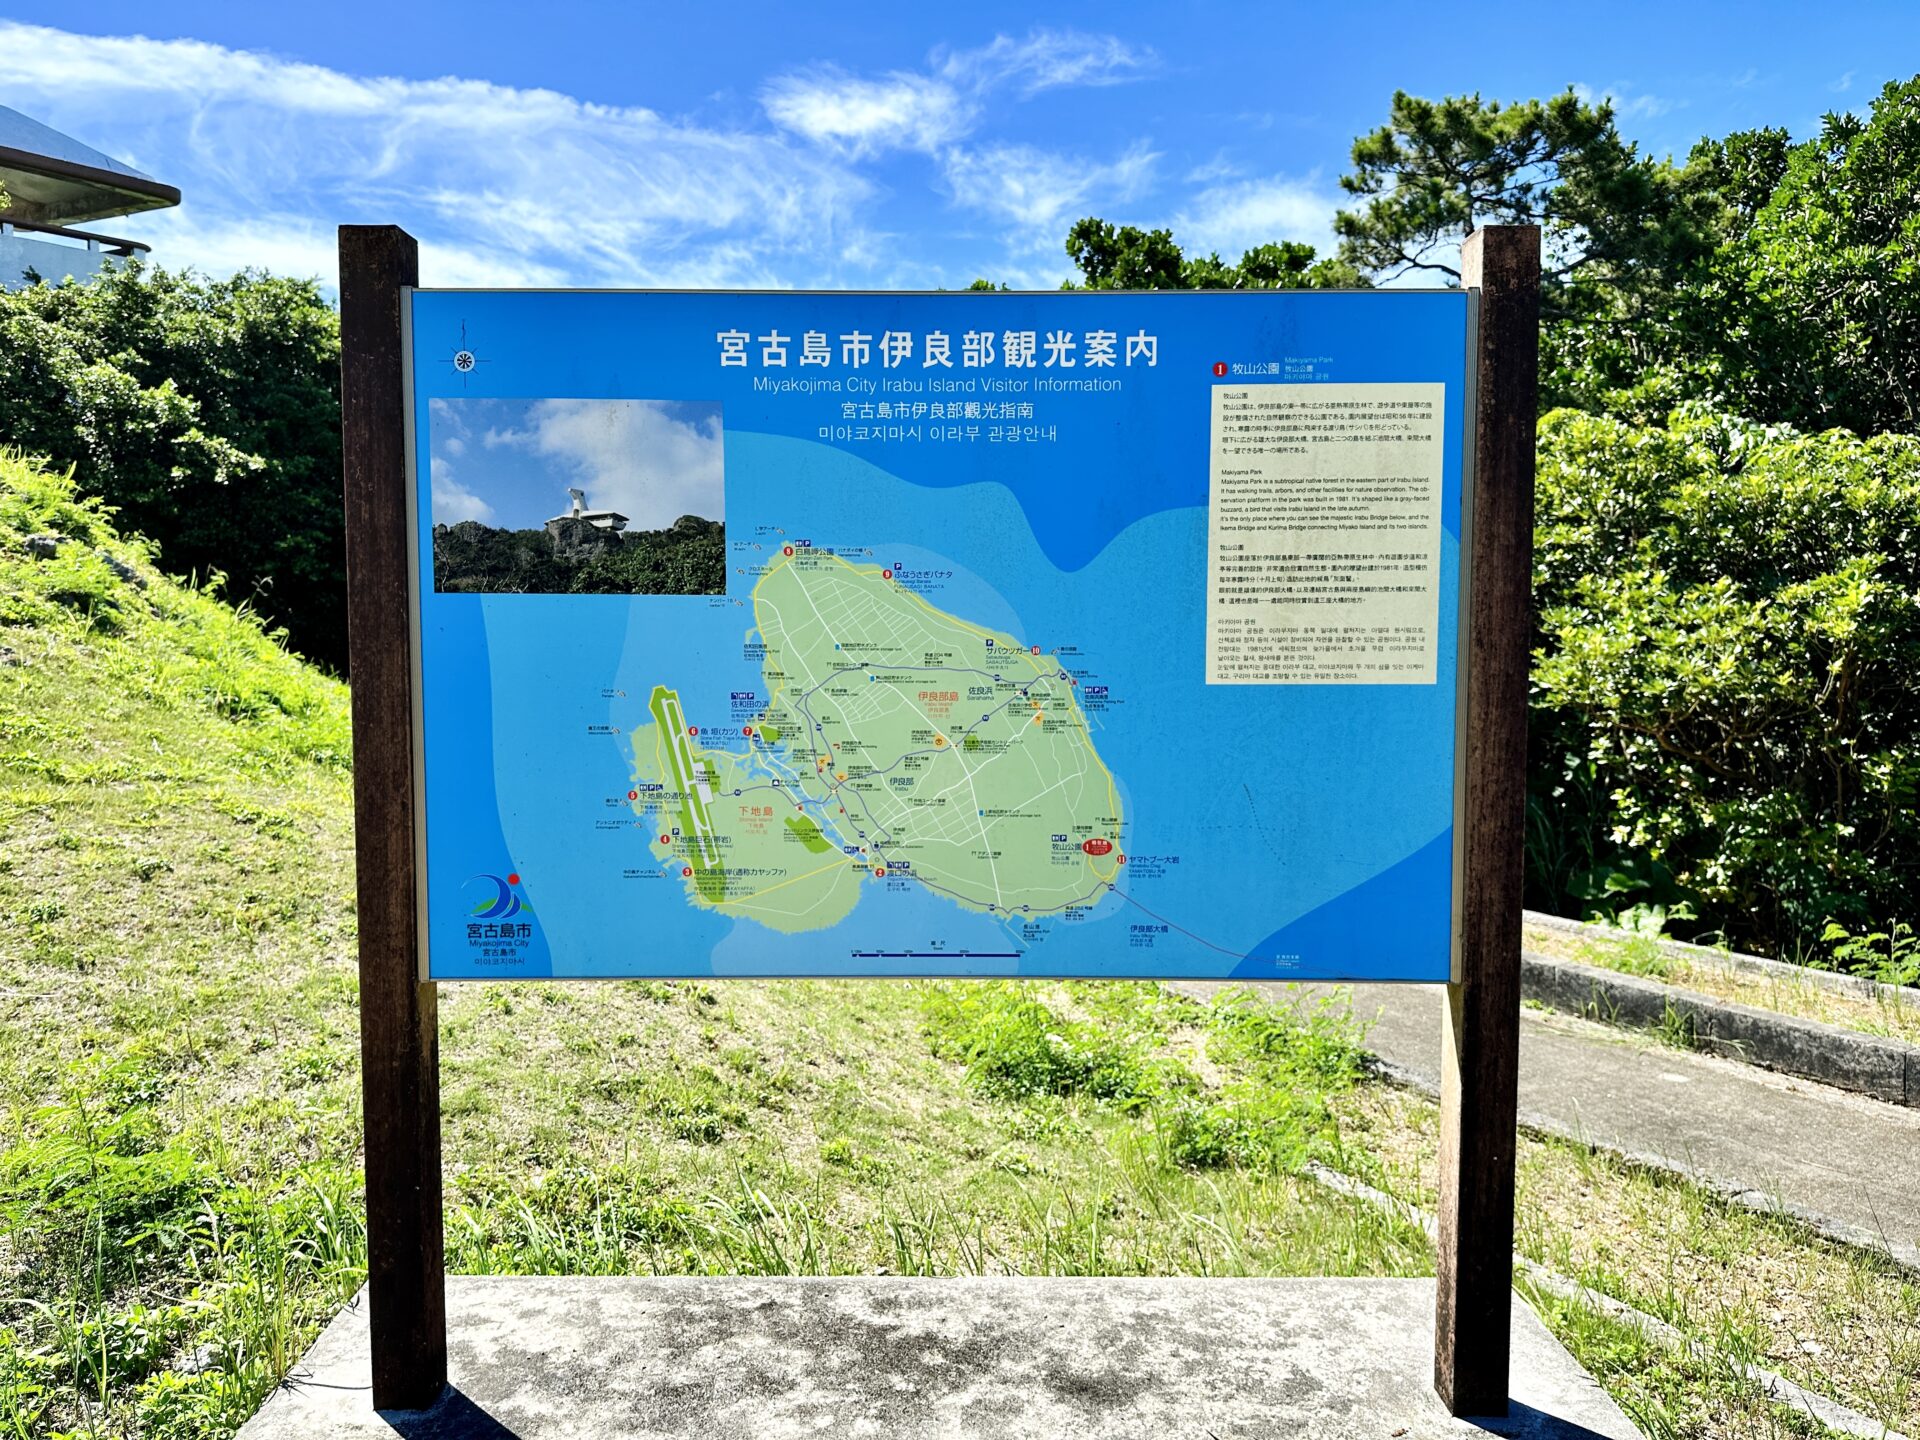 【ブログ旅行記】はじめての宮古島旅行 3泊4日ゆったりモデルコース 牧山展望台マップ